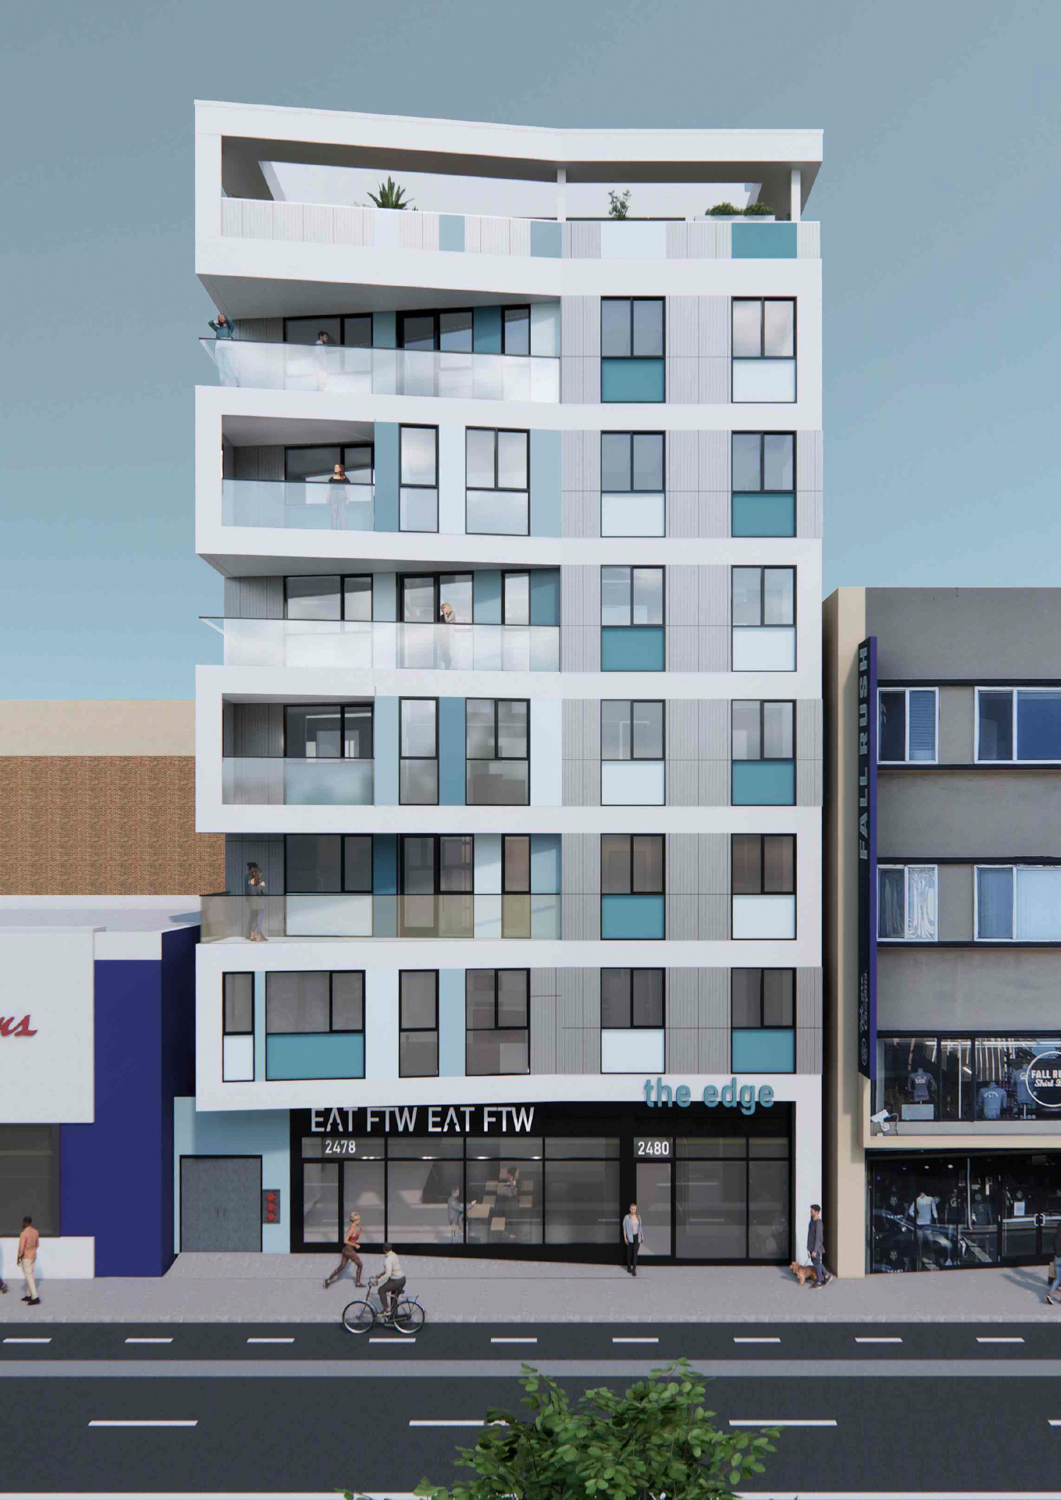 2480 Bancroft Way facade elevation, rendering by Studio KDA